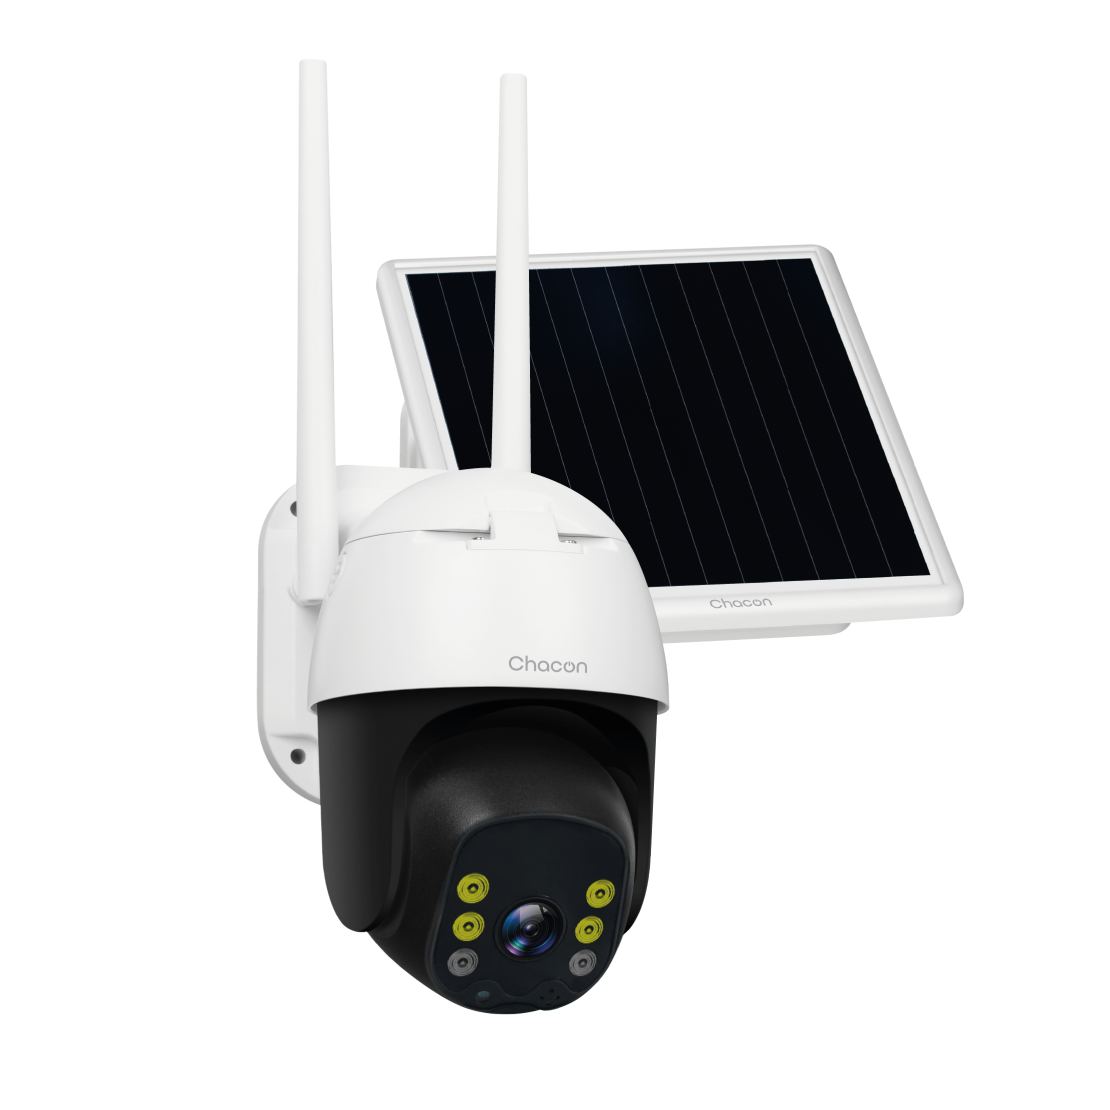 2K Camera Surveillance WiFi Exterieure sans Fil Solaire+Panneau Solaire,  360° Pan-Tilt, Caméra extérieure sans Fil WiFi avec V[72]